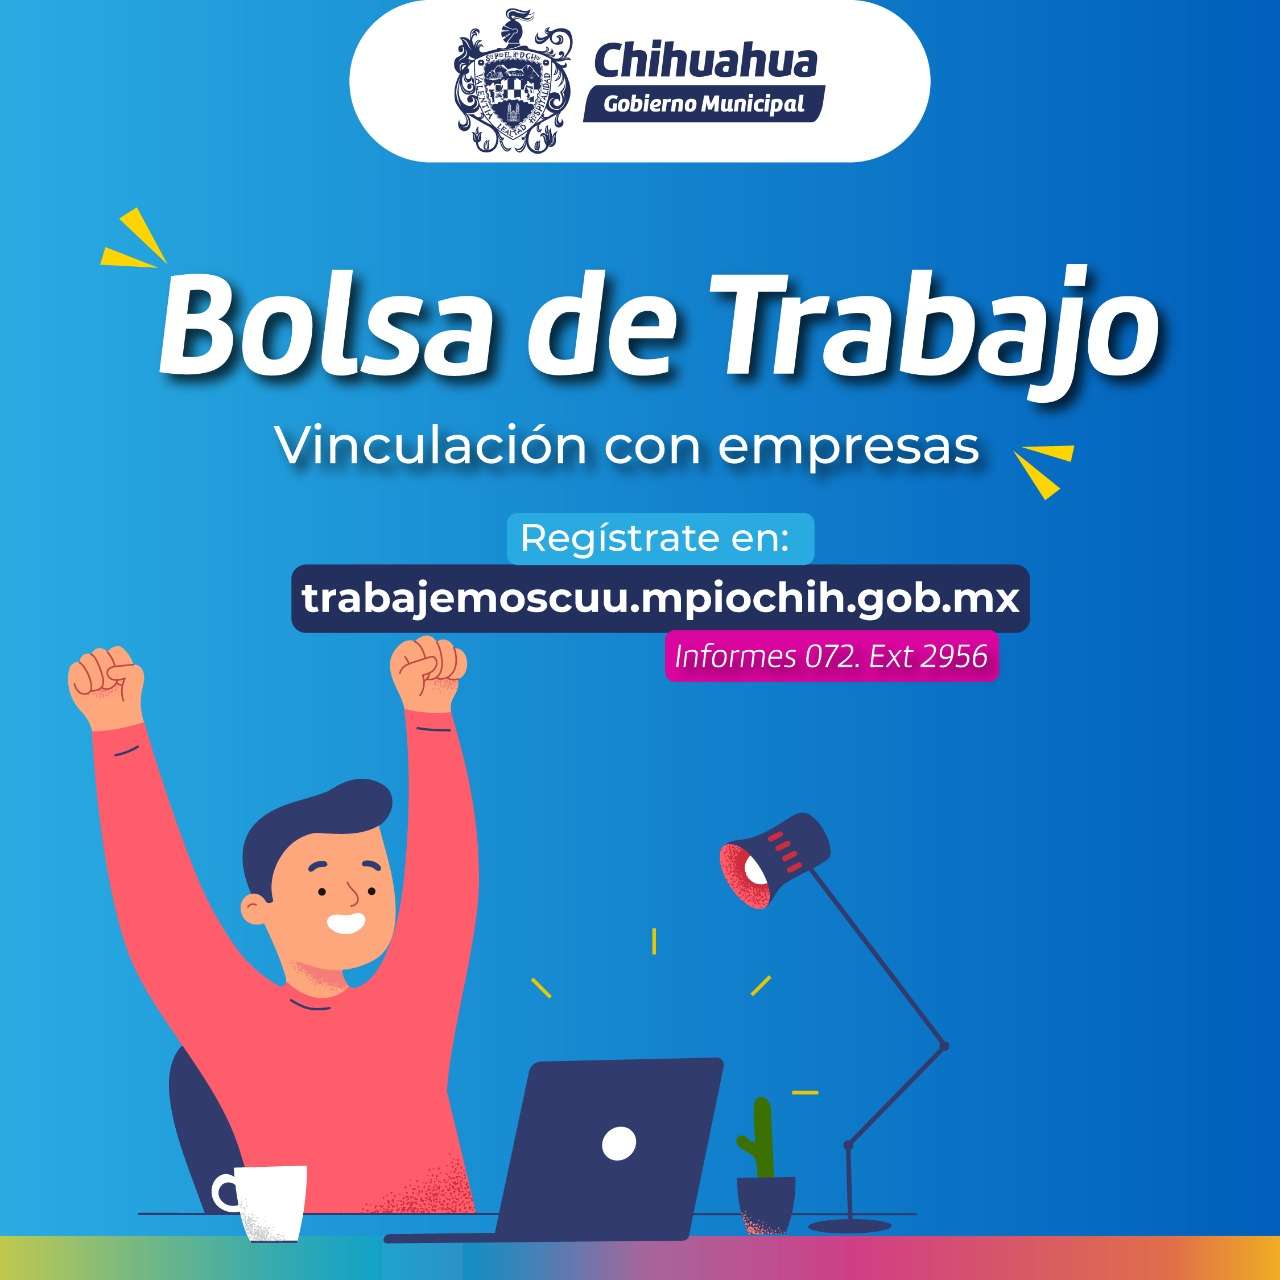 Invitan a registrarse en la bolsa de trabajo del gobierno municipal | La  Opción de Chihuahua